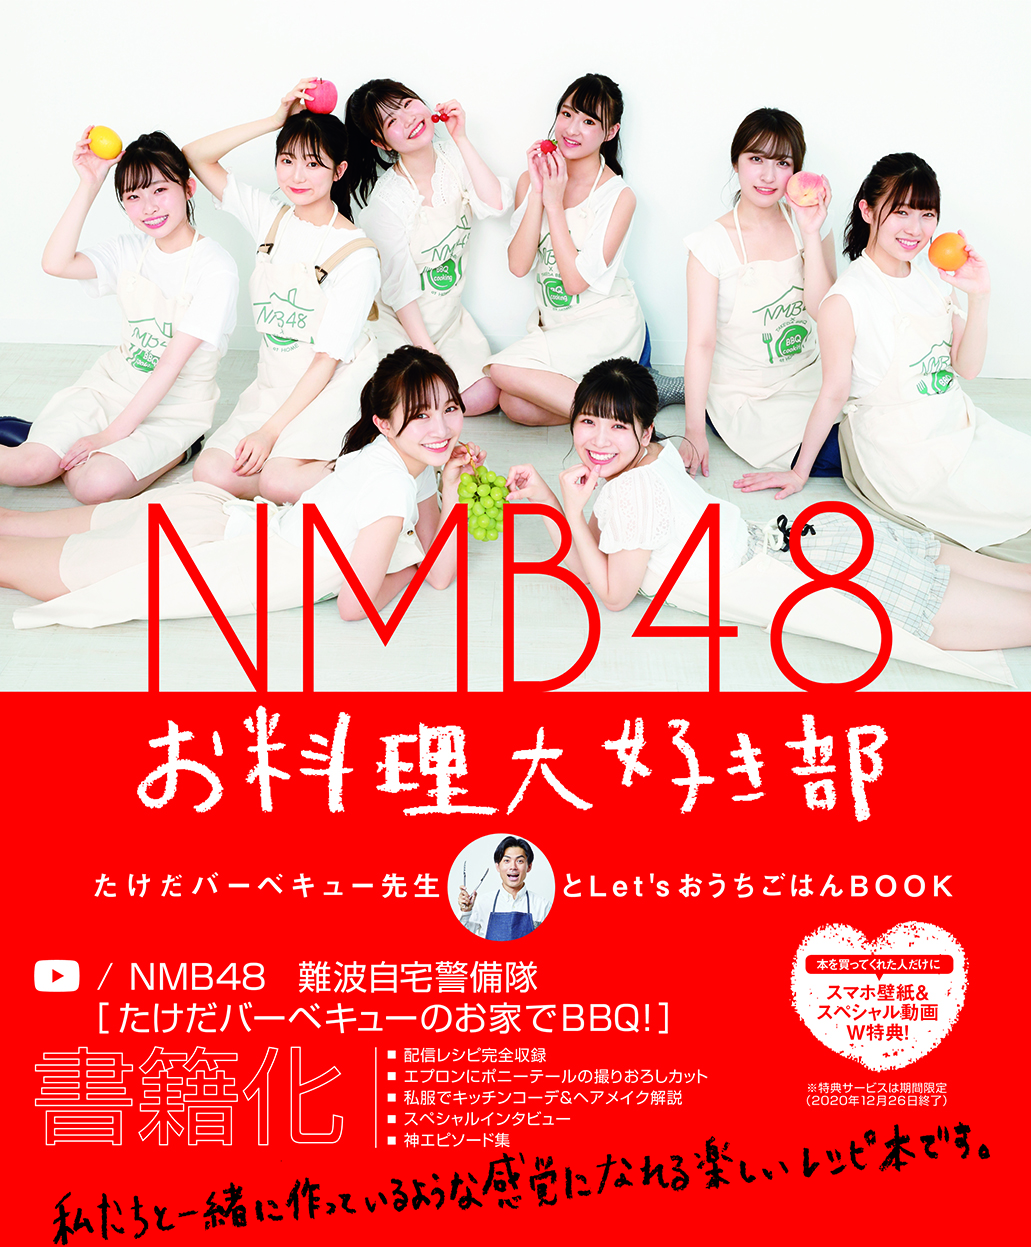 吉たこ Nmb48 コラボ決定 10月1日よりメンバー考案のオリジナルメニューが販売開始 吉本興業株式会社のプレスリリース